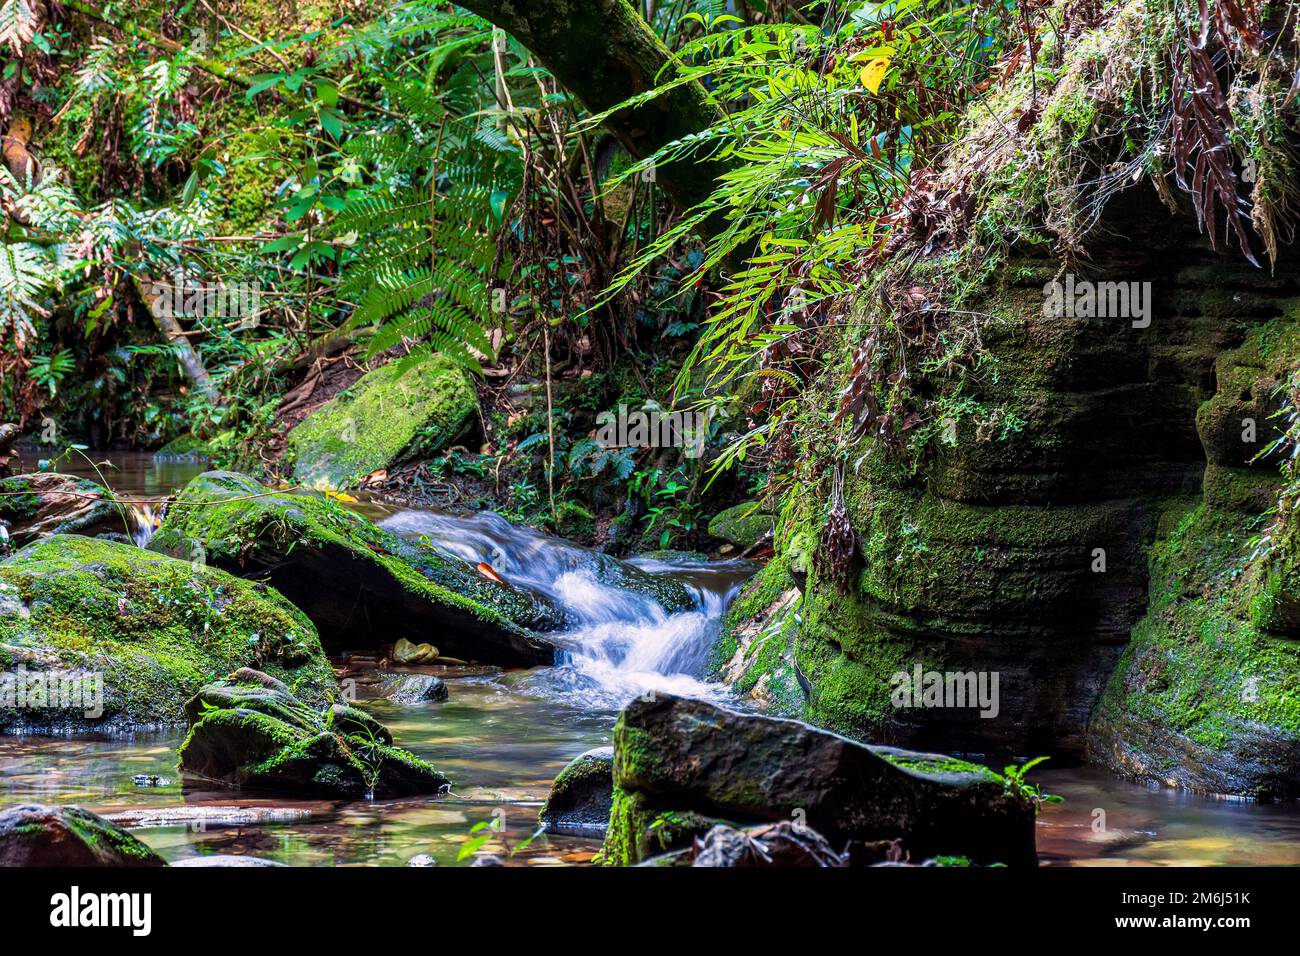 Piccolo ruscello che scorre attraverso le rocce mossy all'interno della foresta pluviale Foto Stock